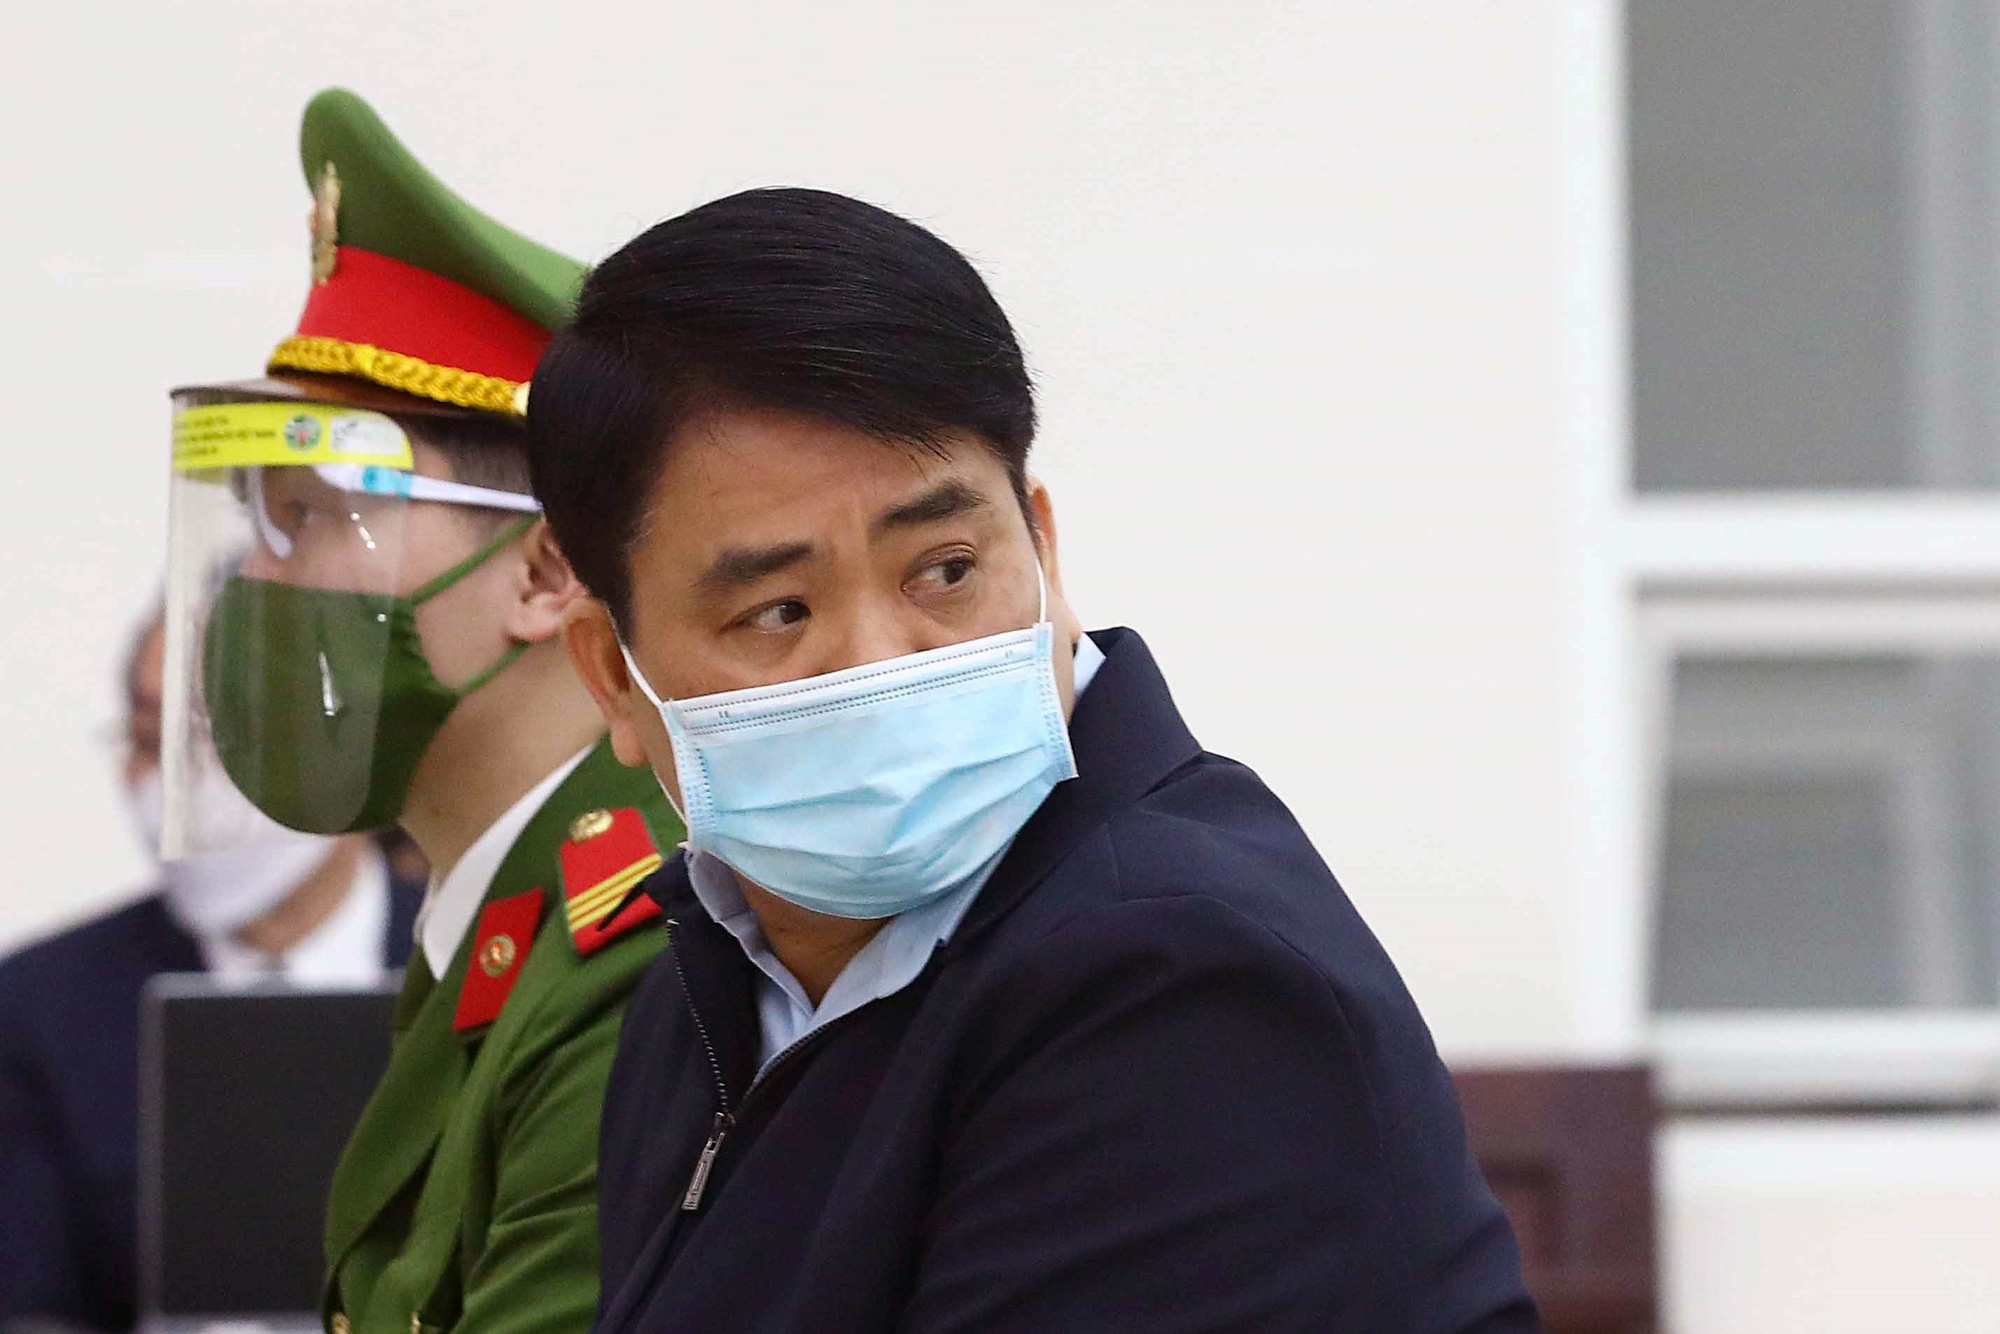 Ông Nguyễn Đức Chung lĩnh 8 năm tù, phải bồi thường 25 tỷ đồng - Ảnh 1.